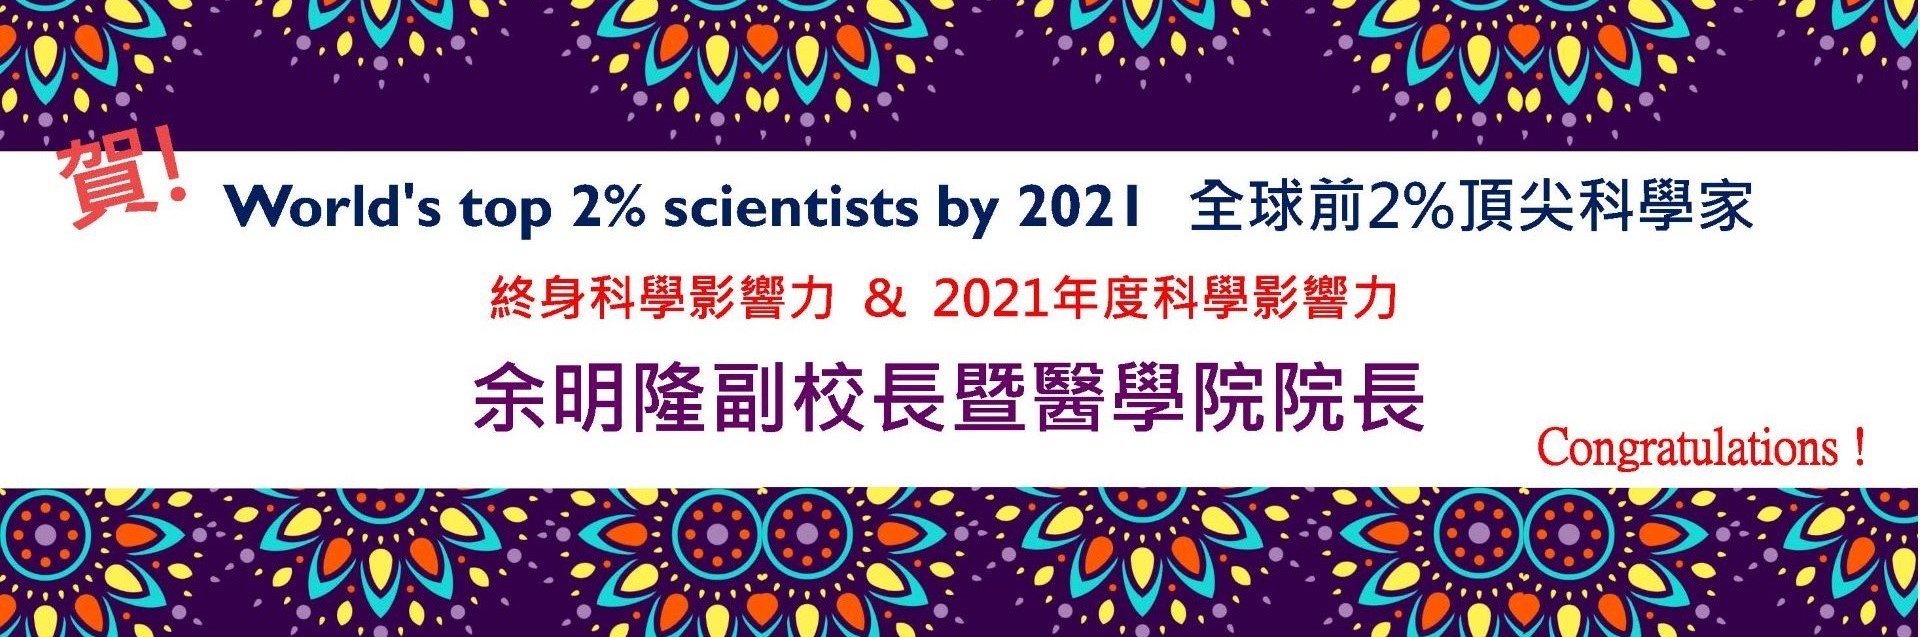 祝賀余明隆副校長/醫學院院長榮獲2021年全球前2%頂尖科學家